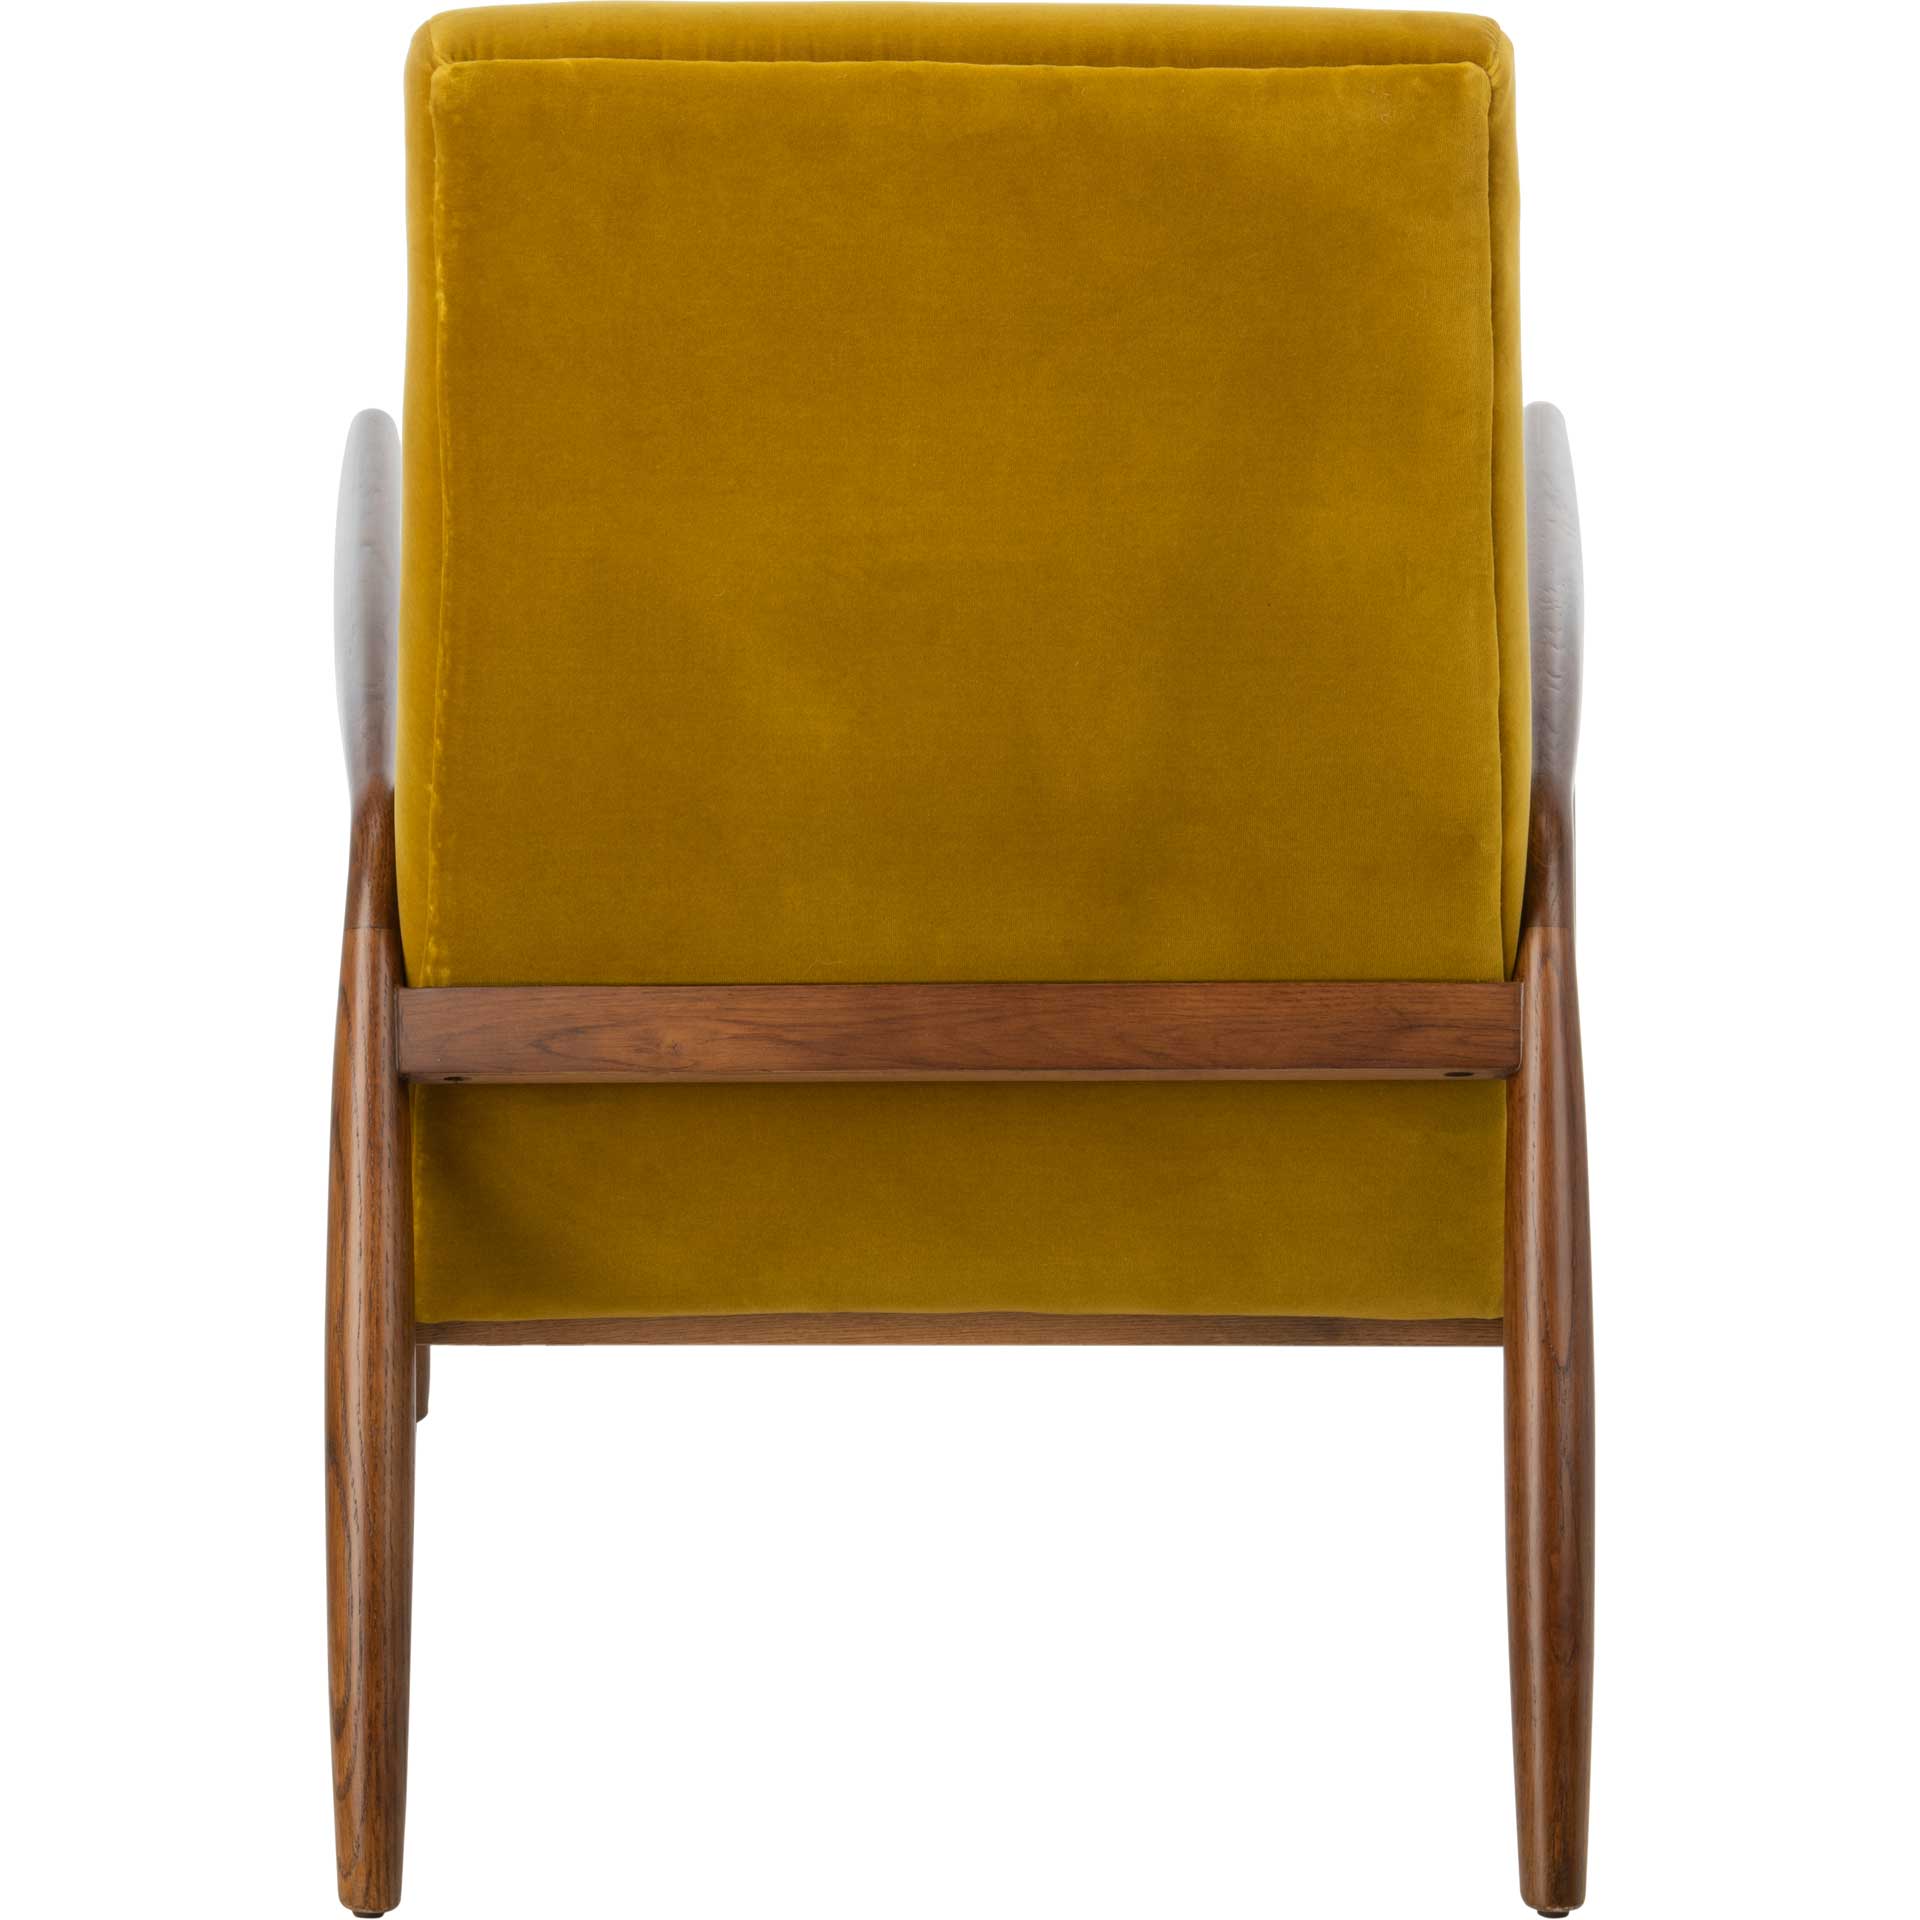 Wilson Channel Arm Chair Gold/Dark Walnut